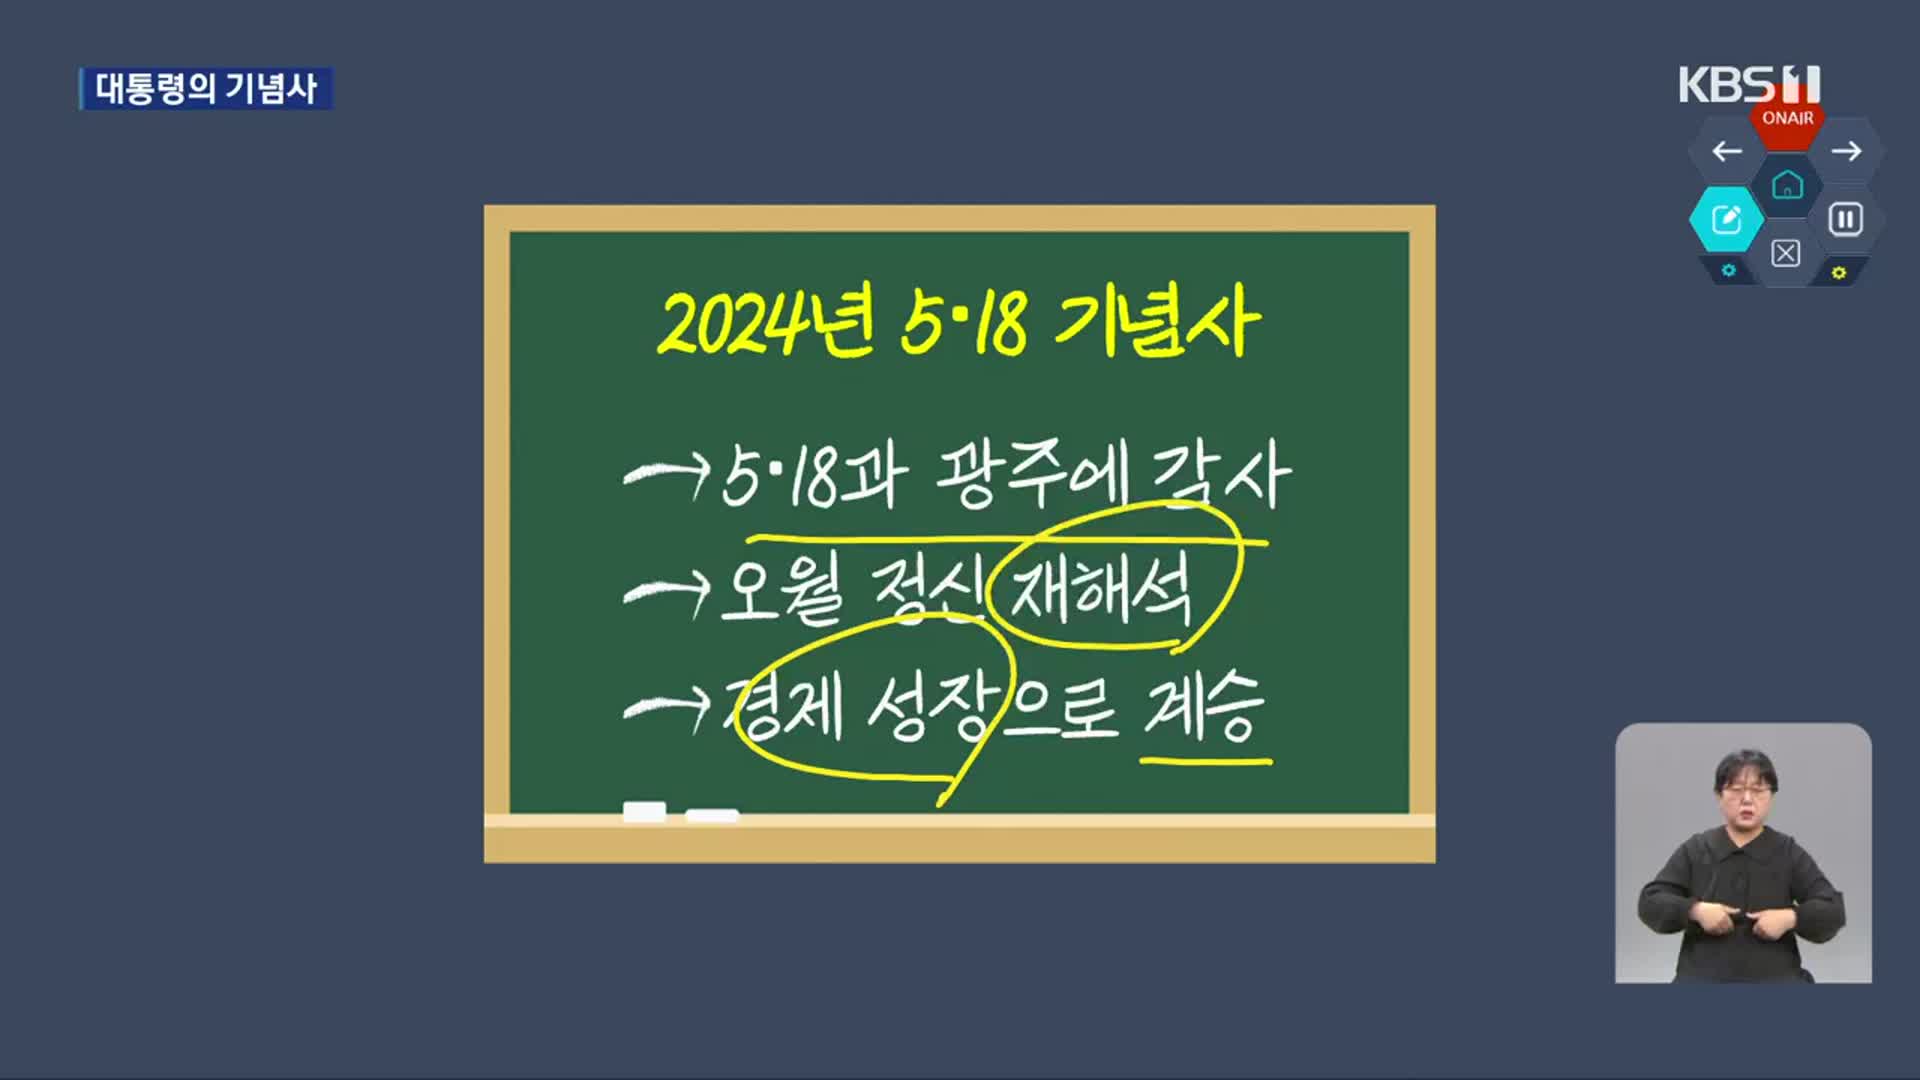 윤석열 대통령 3년간 5·18 기념사 분석